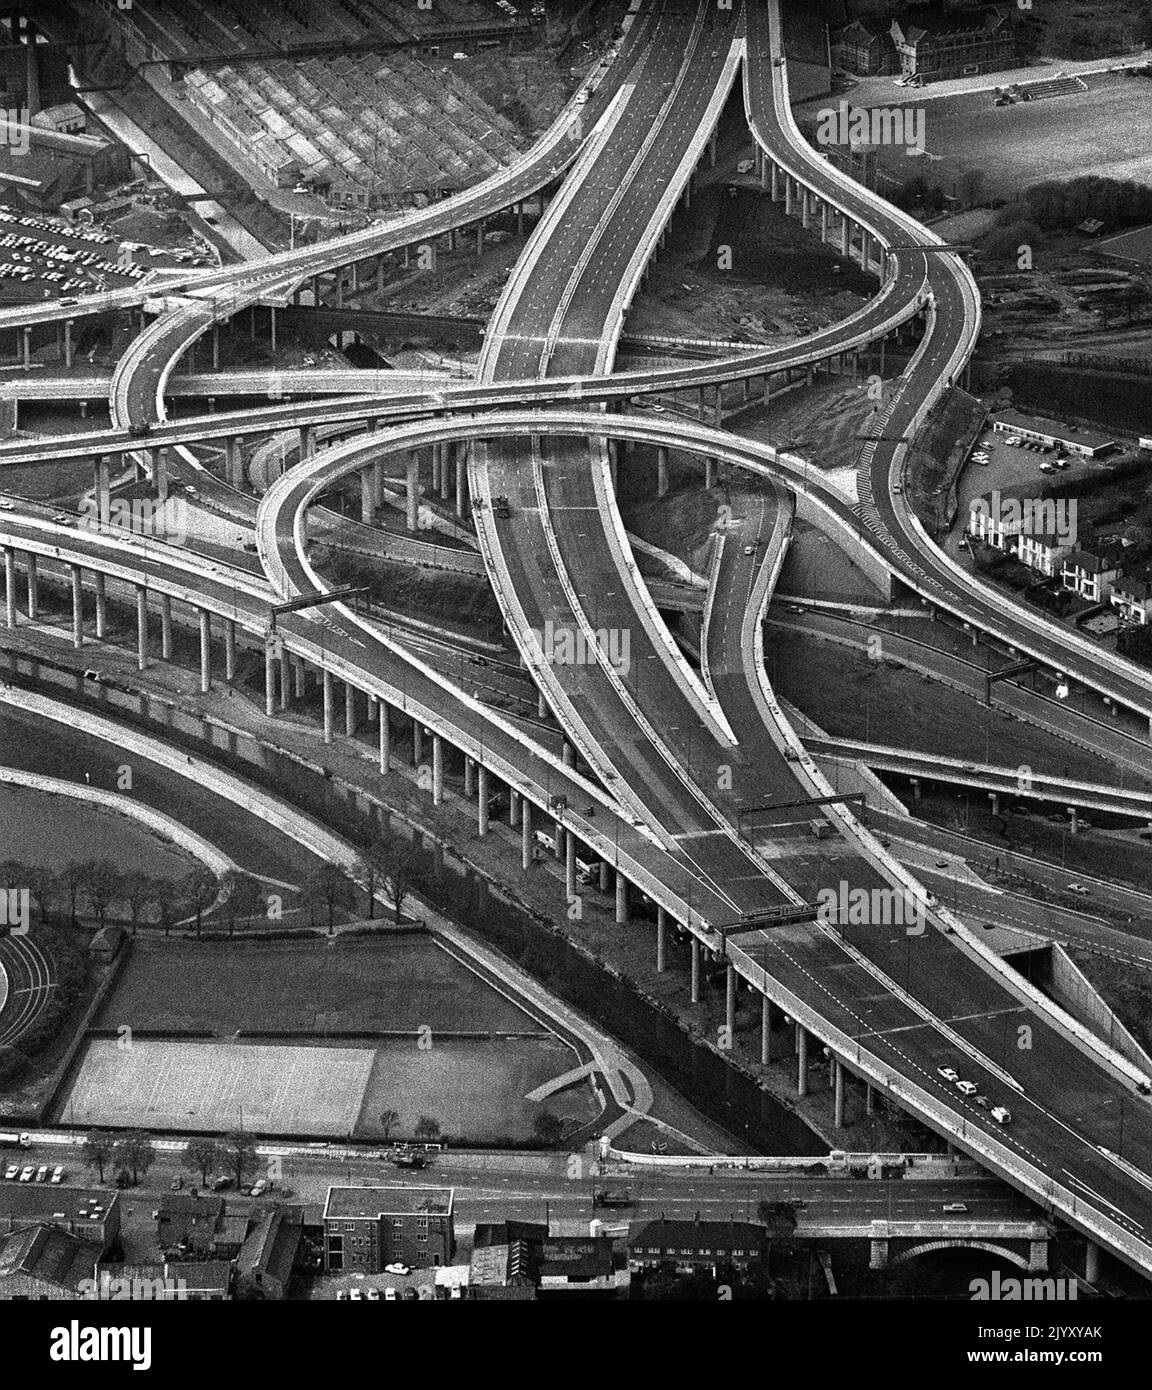 1972: Aktenfoto vom 1972. Mai der neu eröffneten Kreuzung Gravelly Hill - liebevoll Spaghetti Junction genannt - in Birmingham. Ausgabedatum: Donnerstag, 8. September 2022. Stockfoto